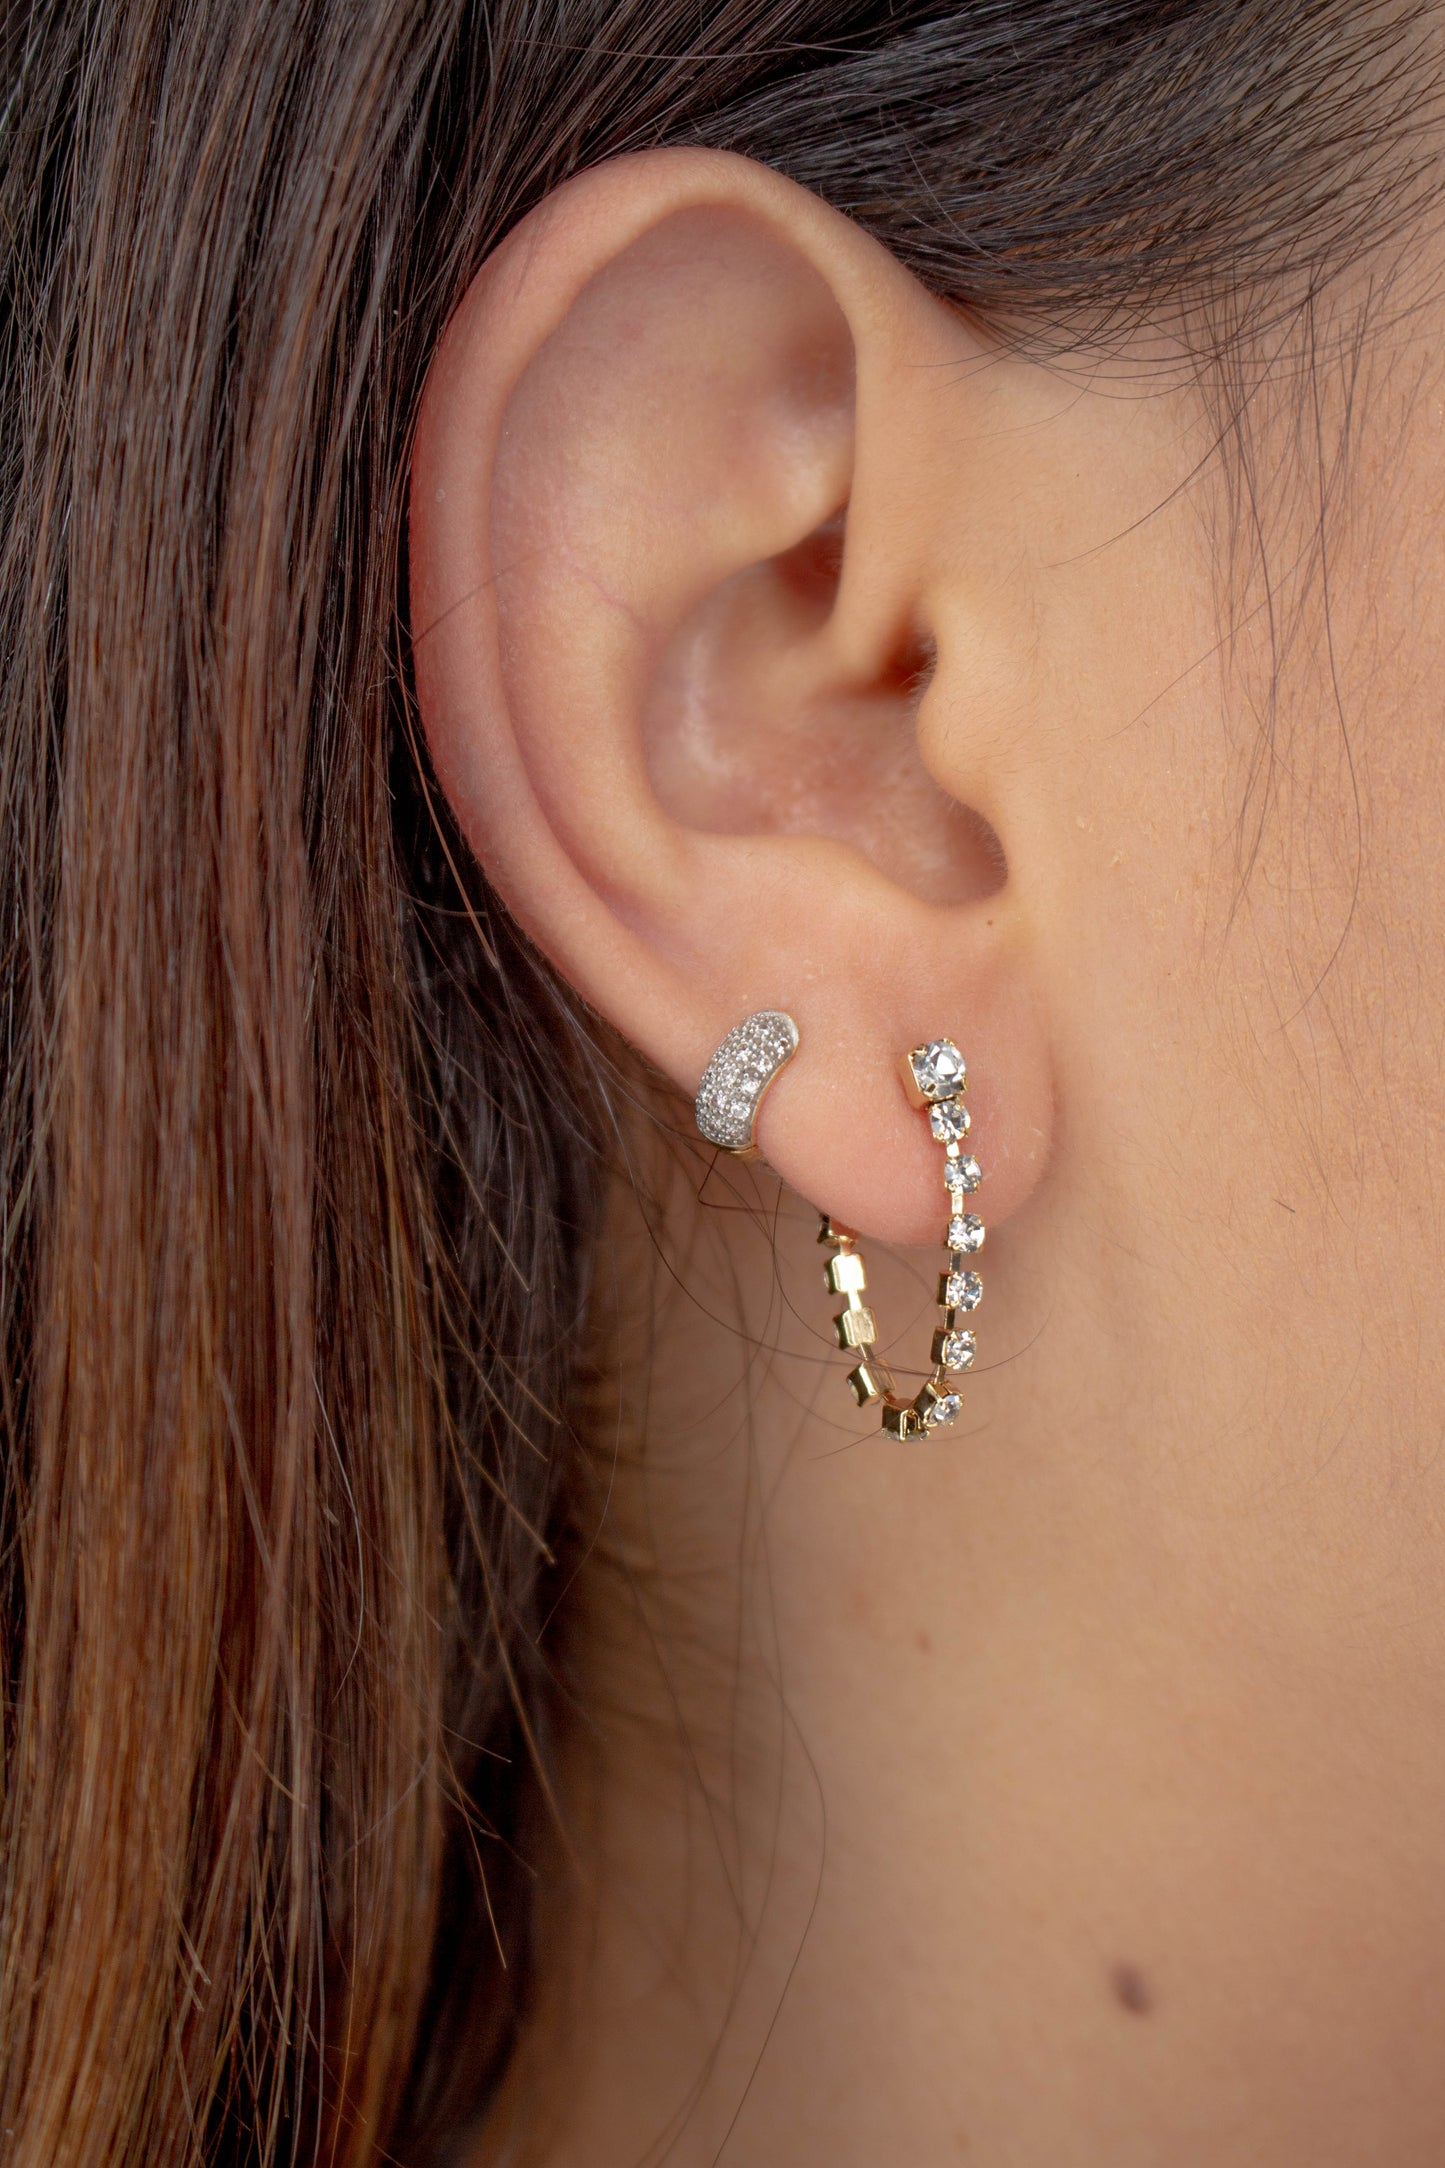 Tennis Zirconia Stud Earrings | Tennis Chain Earrings | Dangle Earrings